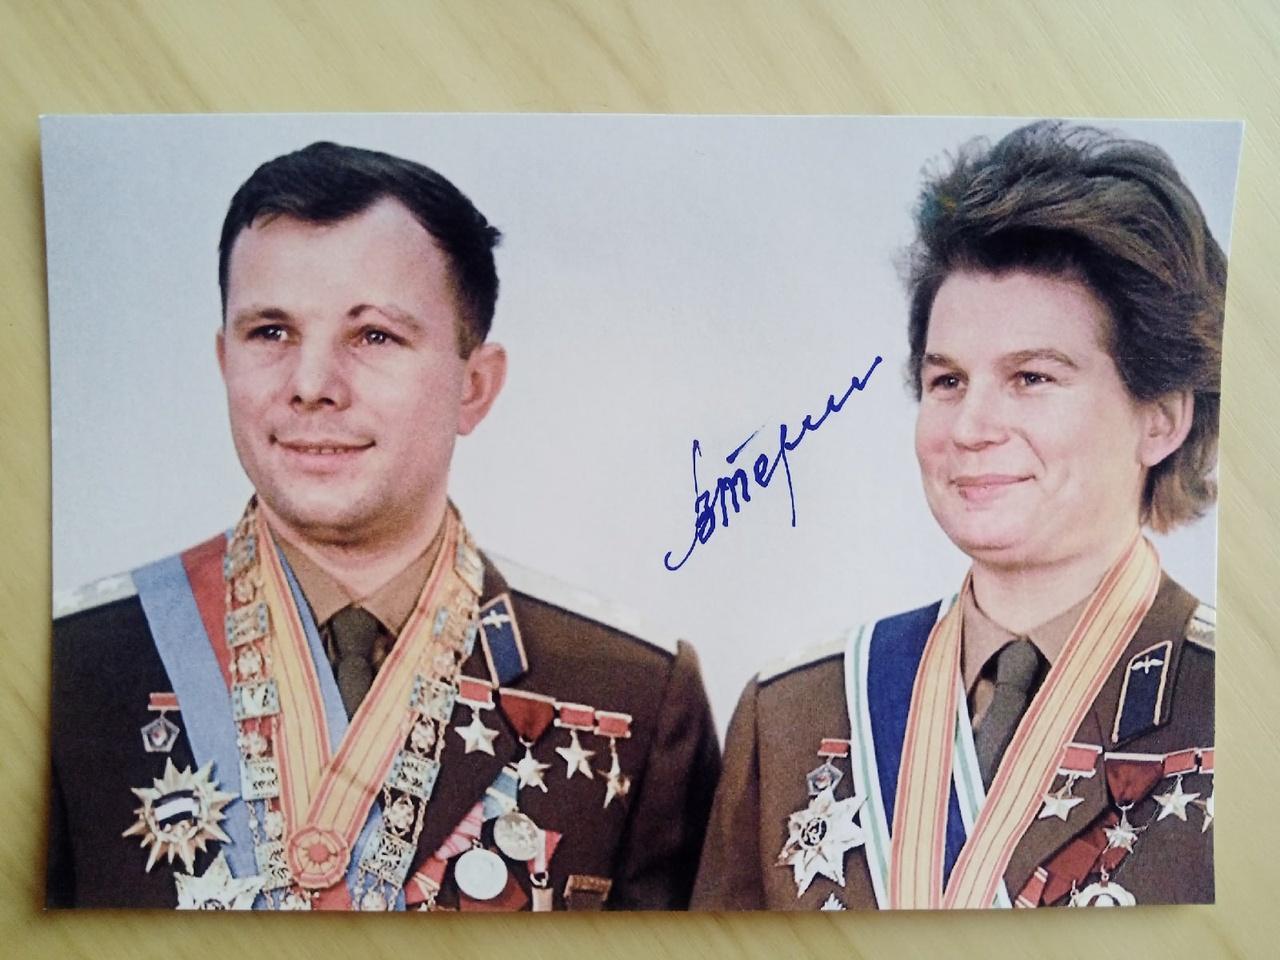 Автограф Валентины Терешковой на фотографии с Юрием Гагариным 2